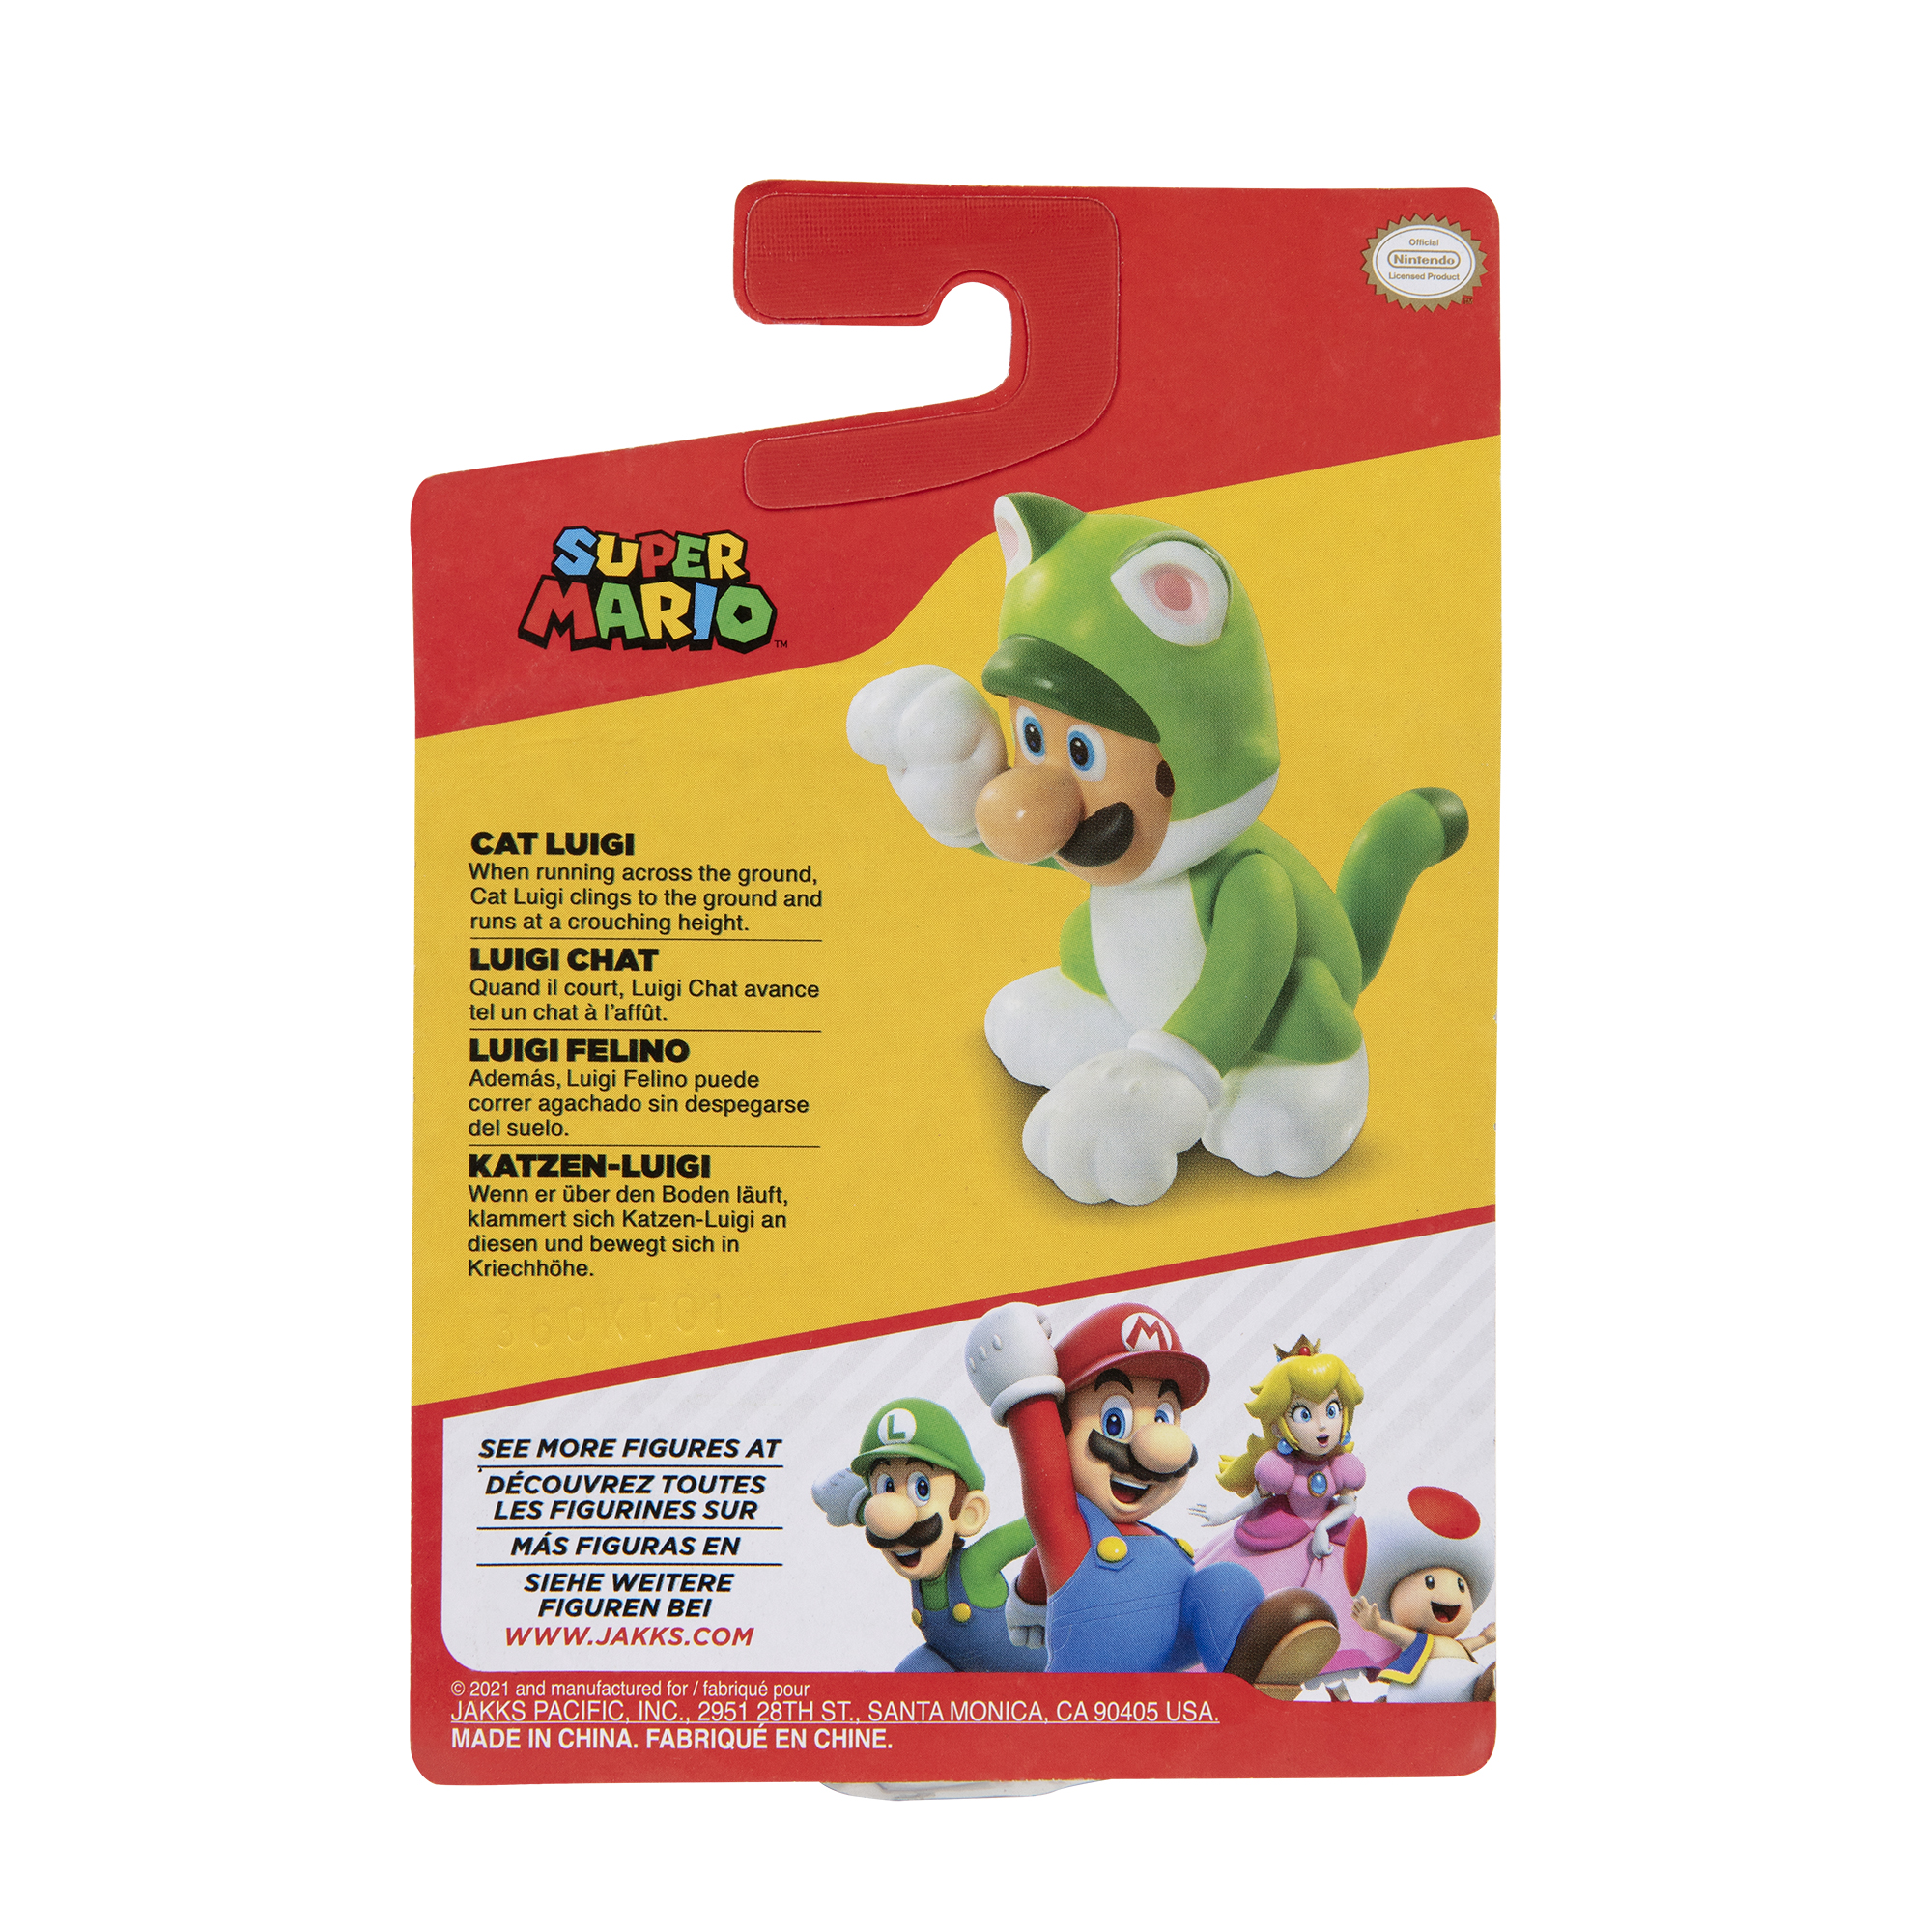 Super MARIO Cat cm Luigi, Spielware Mario Nintendo Figur 6,5 SUPER